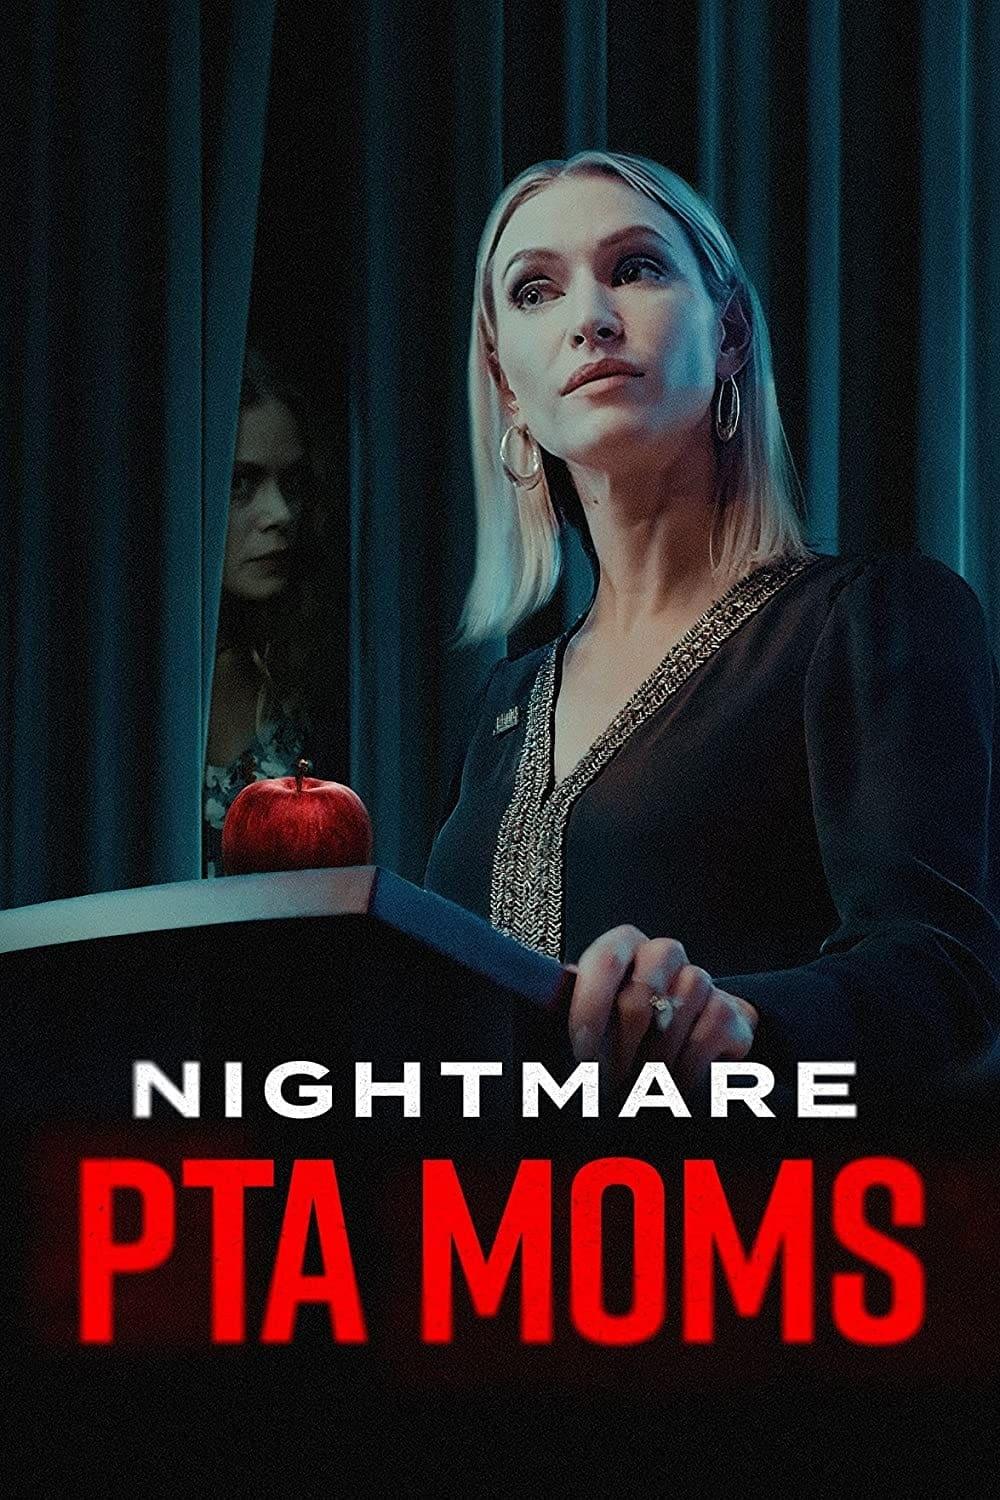 Nightmare PTA Moms poster